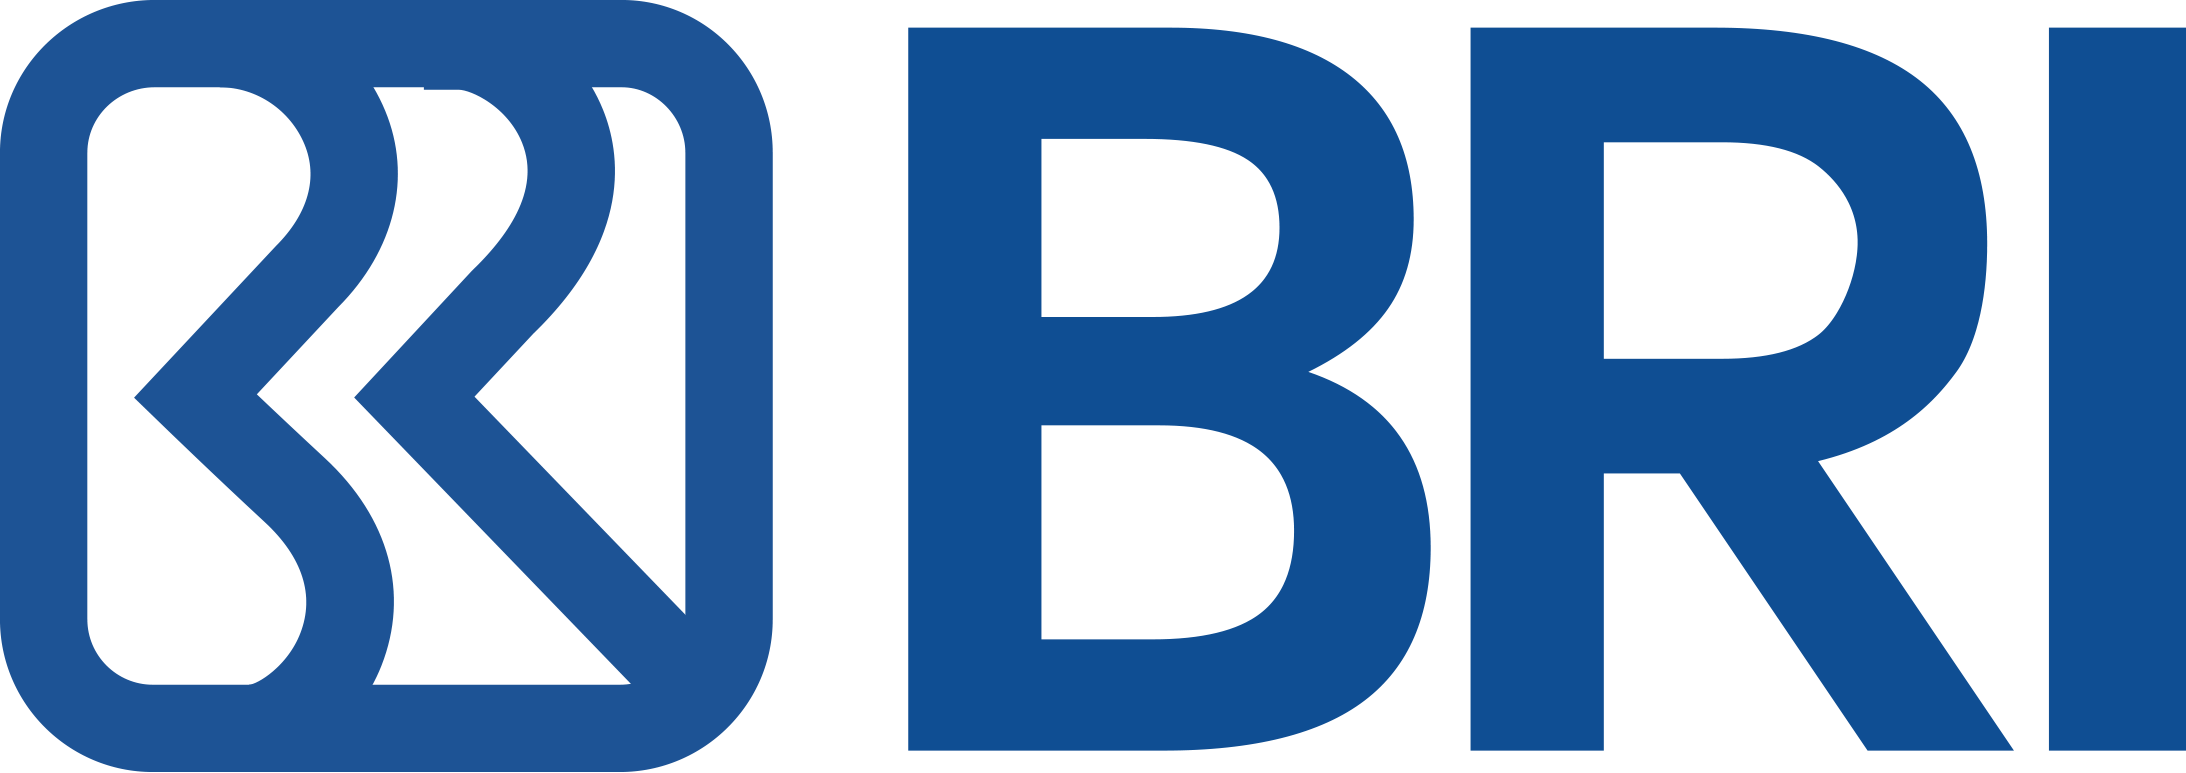 Download Logo Bank Bri - Cari Logo